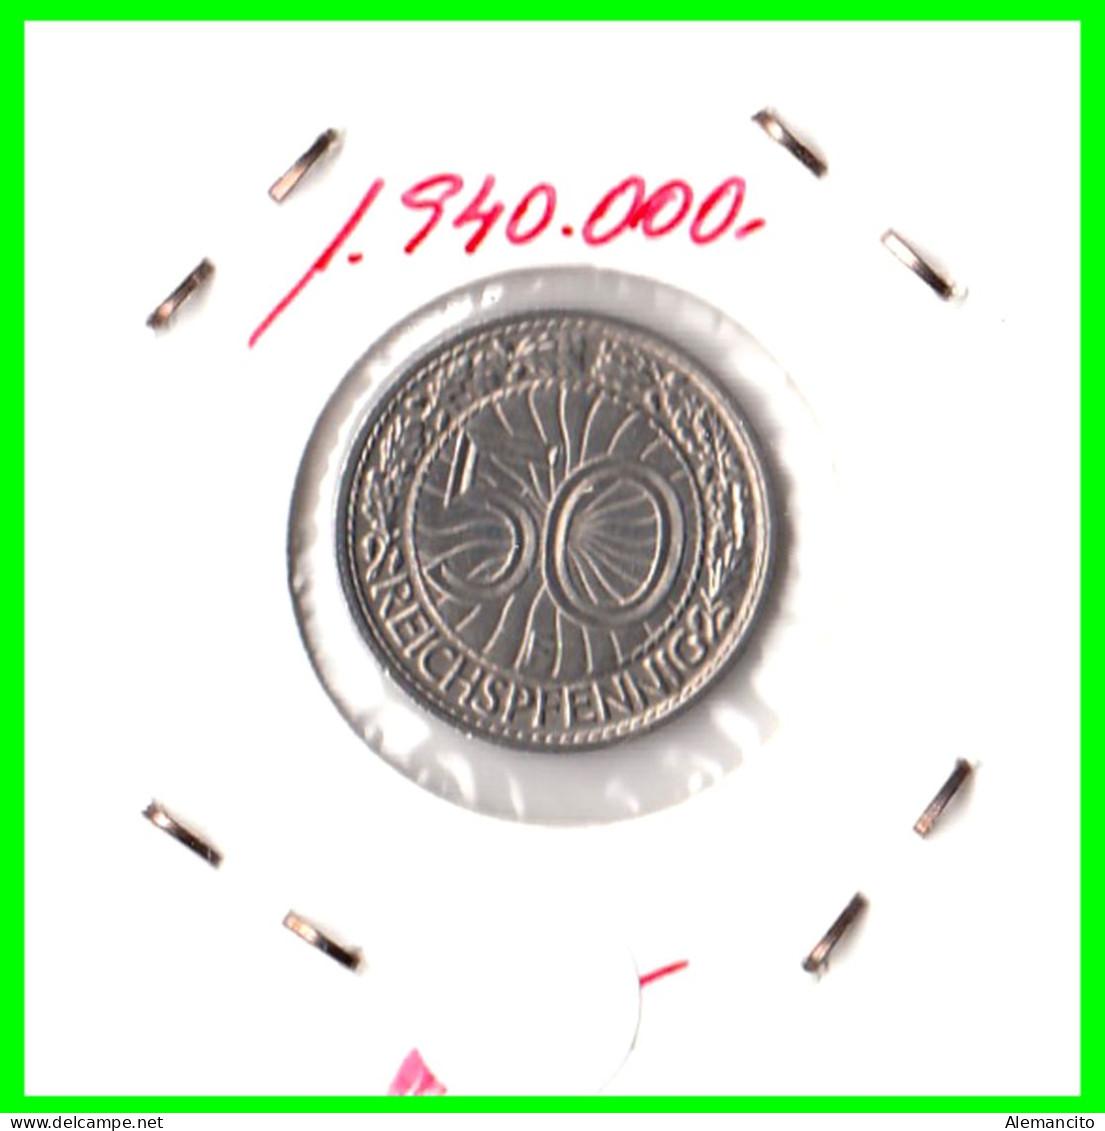 GERMANY REPÚBLICA DE WEIMAR 50 REICHSPFENNIG ( 1927 CECA - F )  (REICHSPFENNIG KM # 40 - 50 Renten- & 50 Reichspfennig